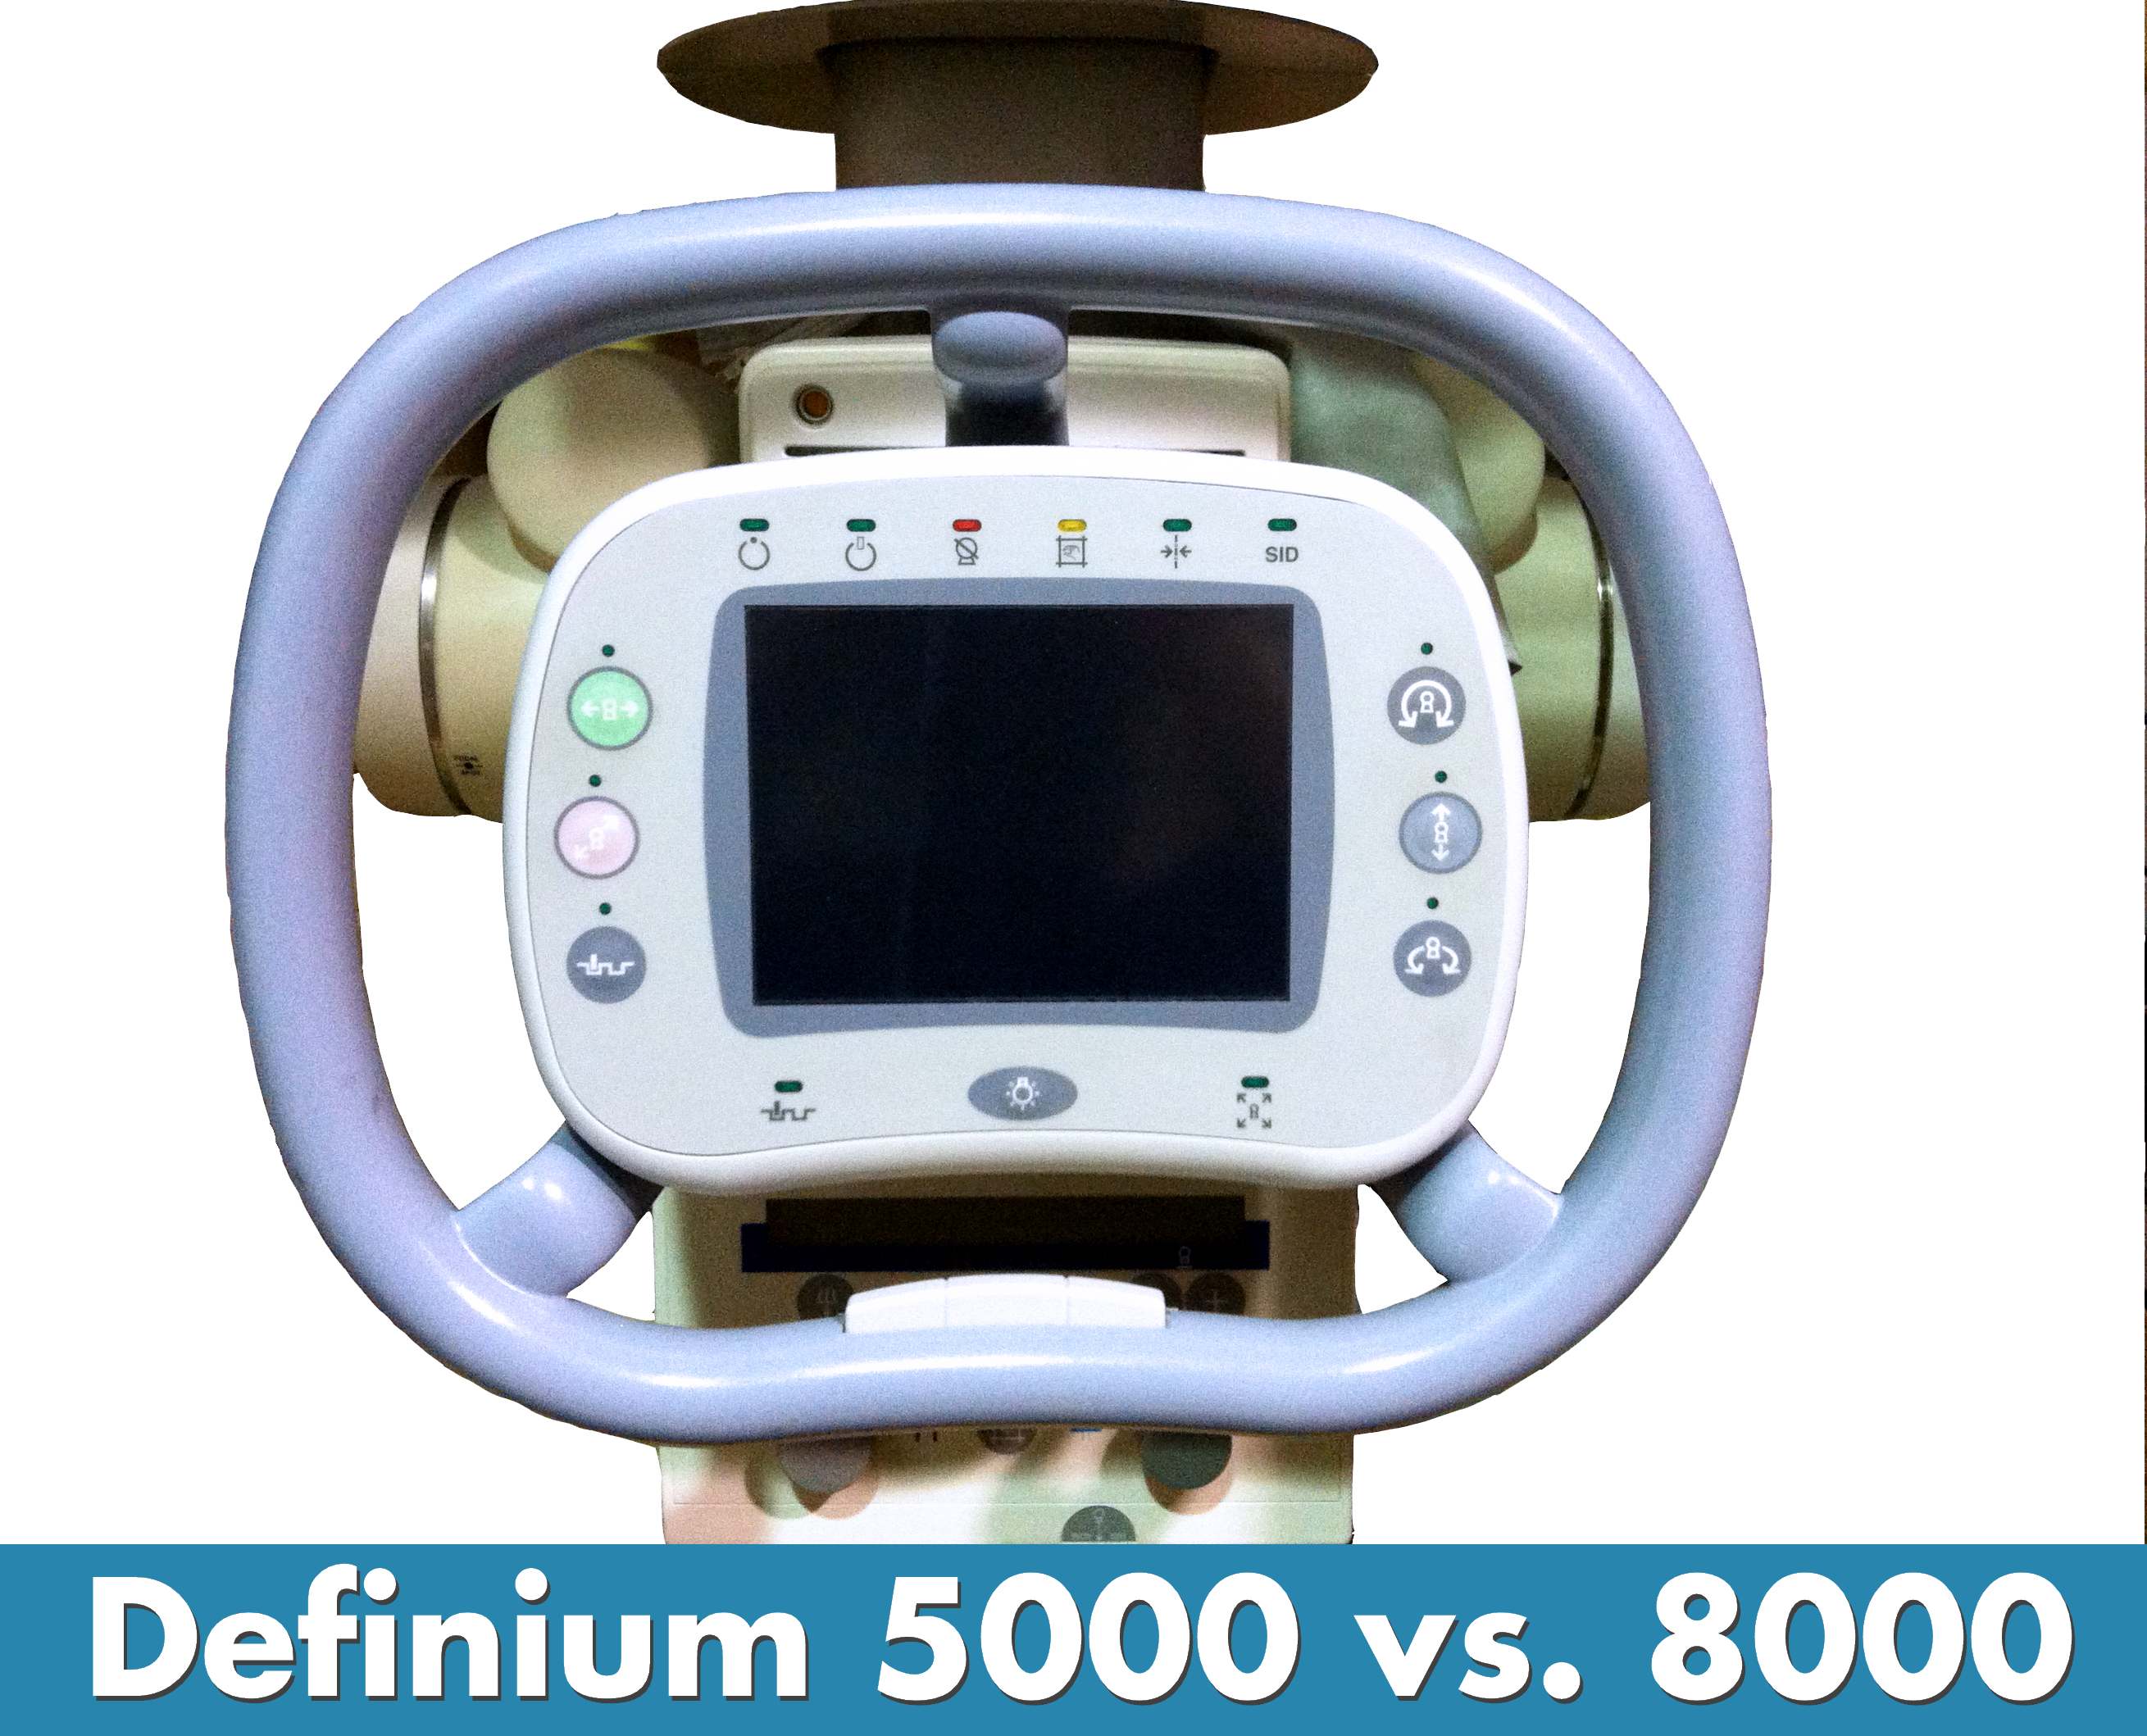 GE Definium 5000 vs. Definium 8000 Digital X-Ray Rooms